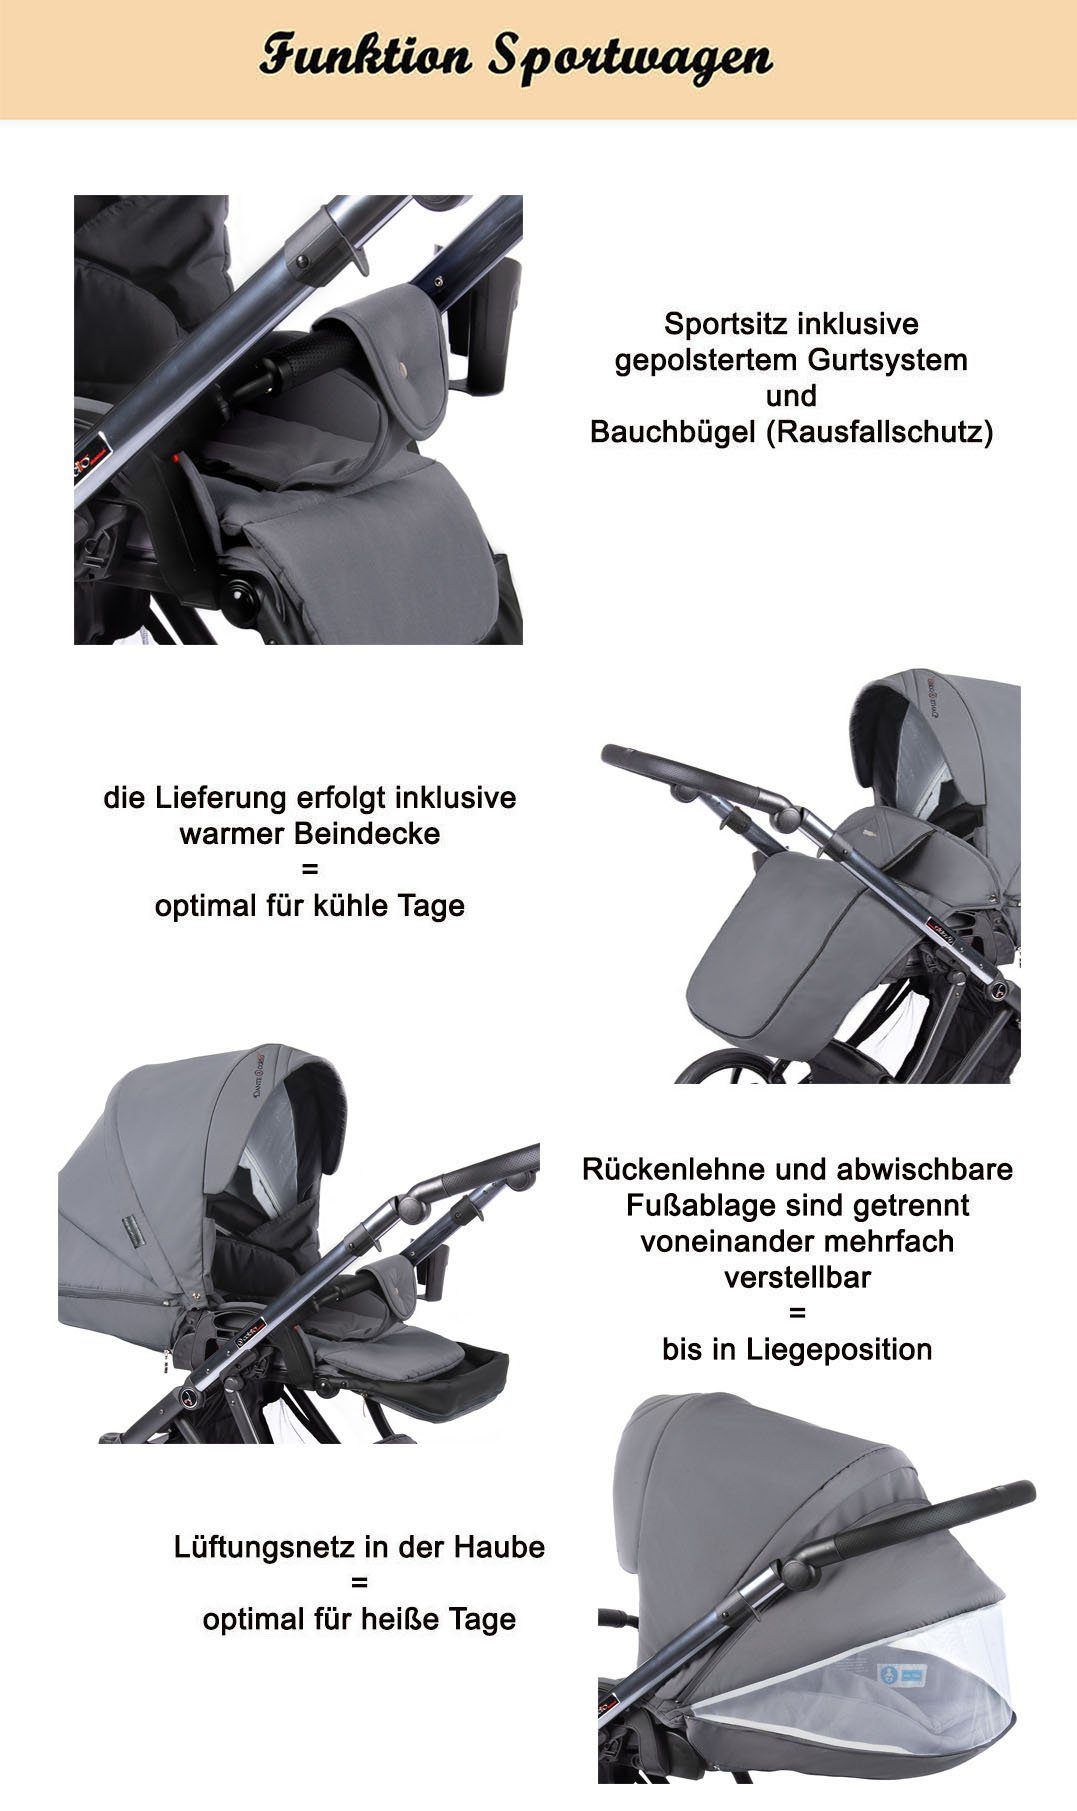 Bordeaux Teile kupfer - 3 Kinderwagen-Set in Farben = Dante - babies-on-wheels 16 1 Kombi-Kinderwagen Gestell in 13